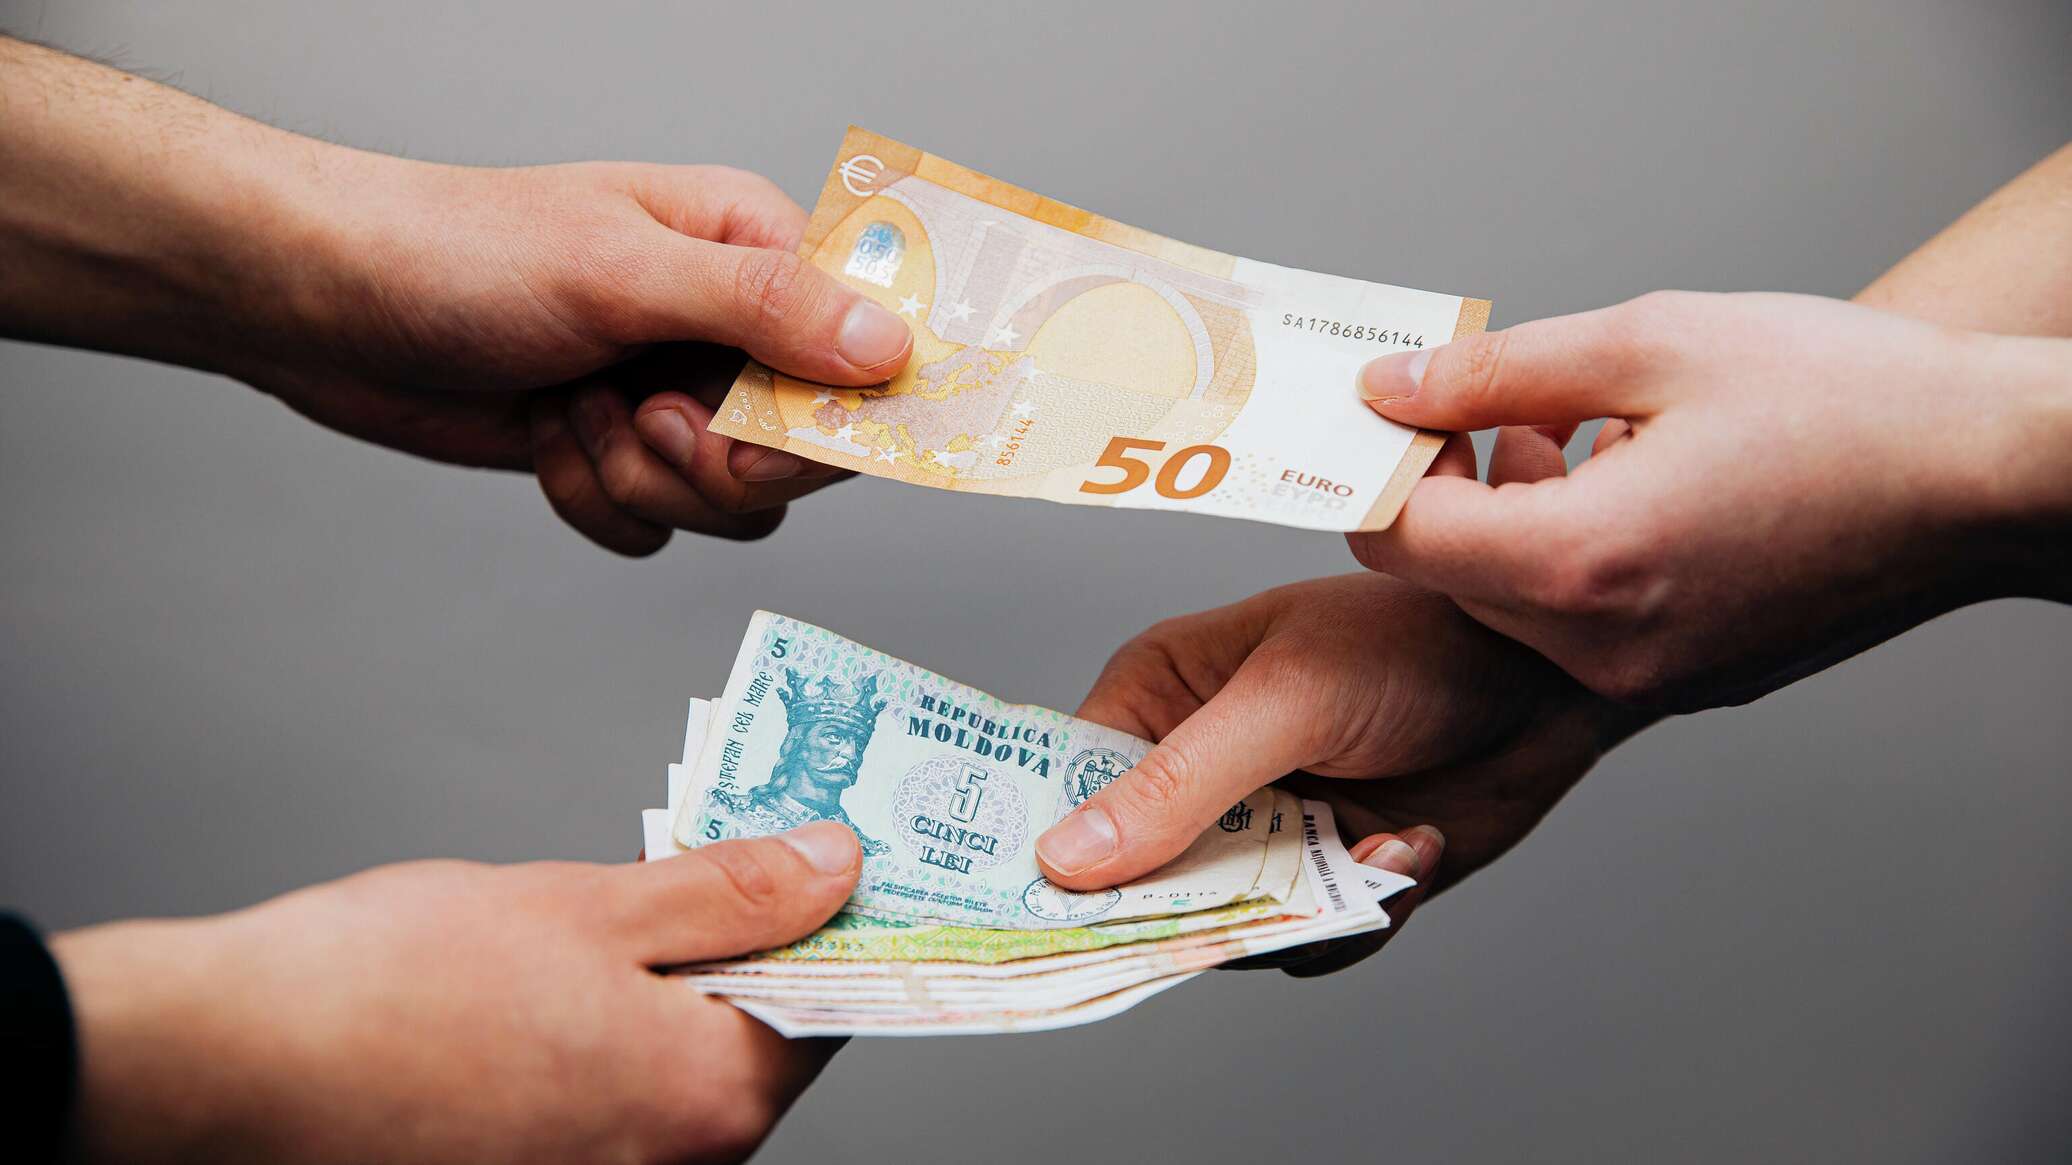 28 гривен в рублях. Евро и грн в руках. Доллары в молдавских леях. Национальная валюта Молдавии.